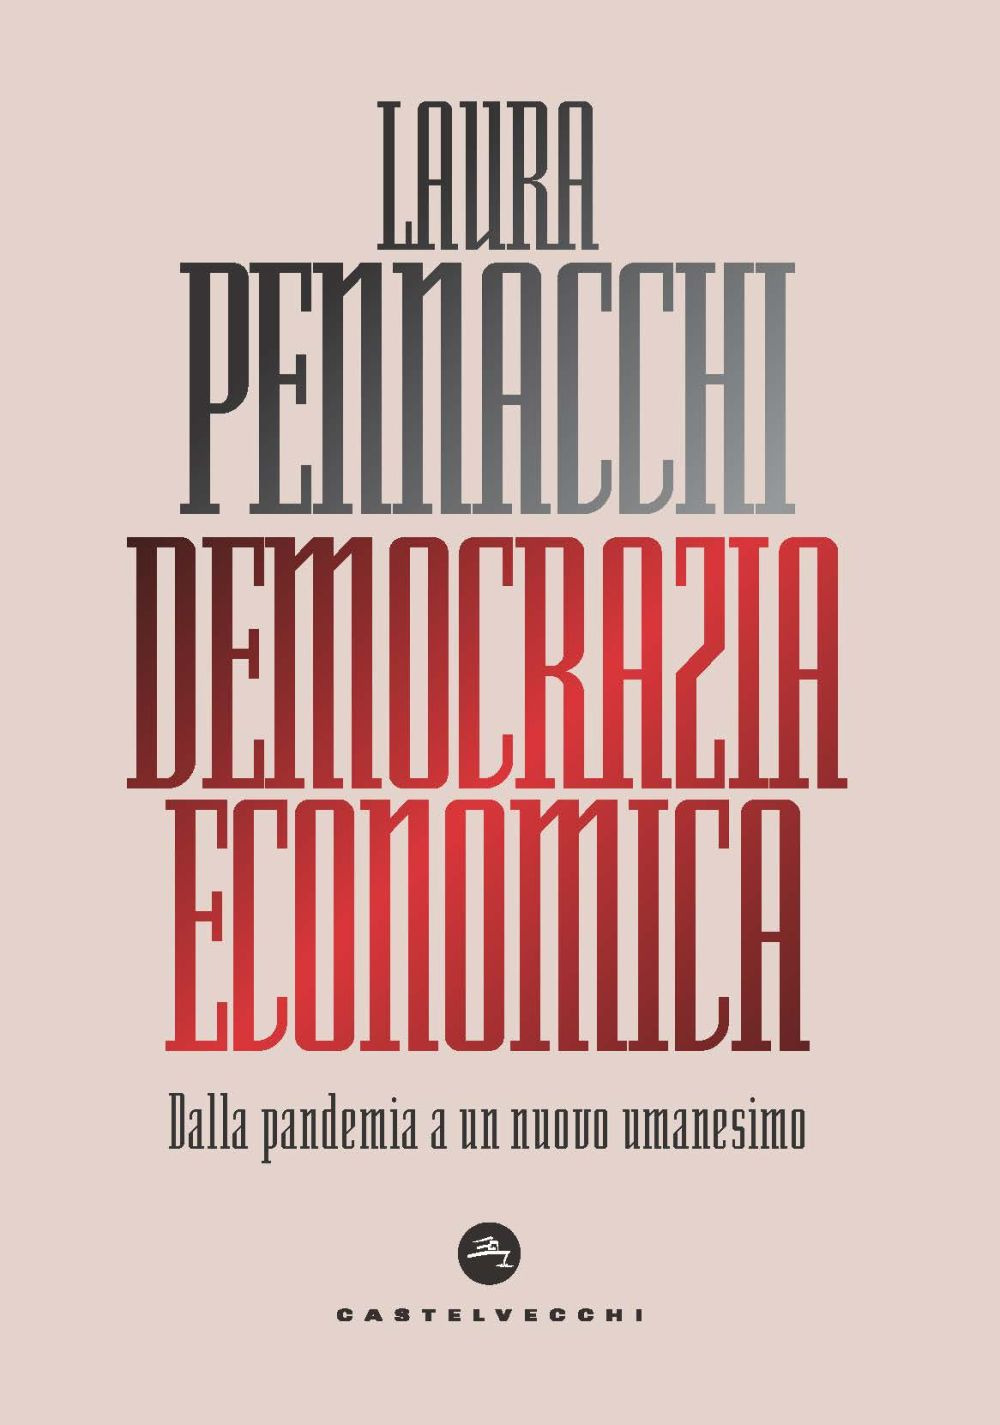 Image of Democrazia economica. Dalla pandemia a un nuovo umanesimo